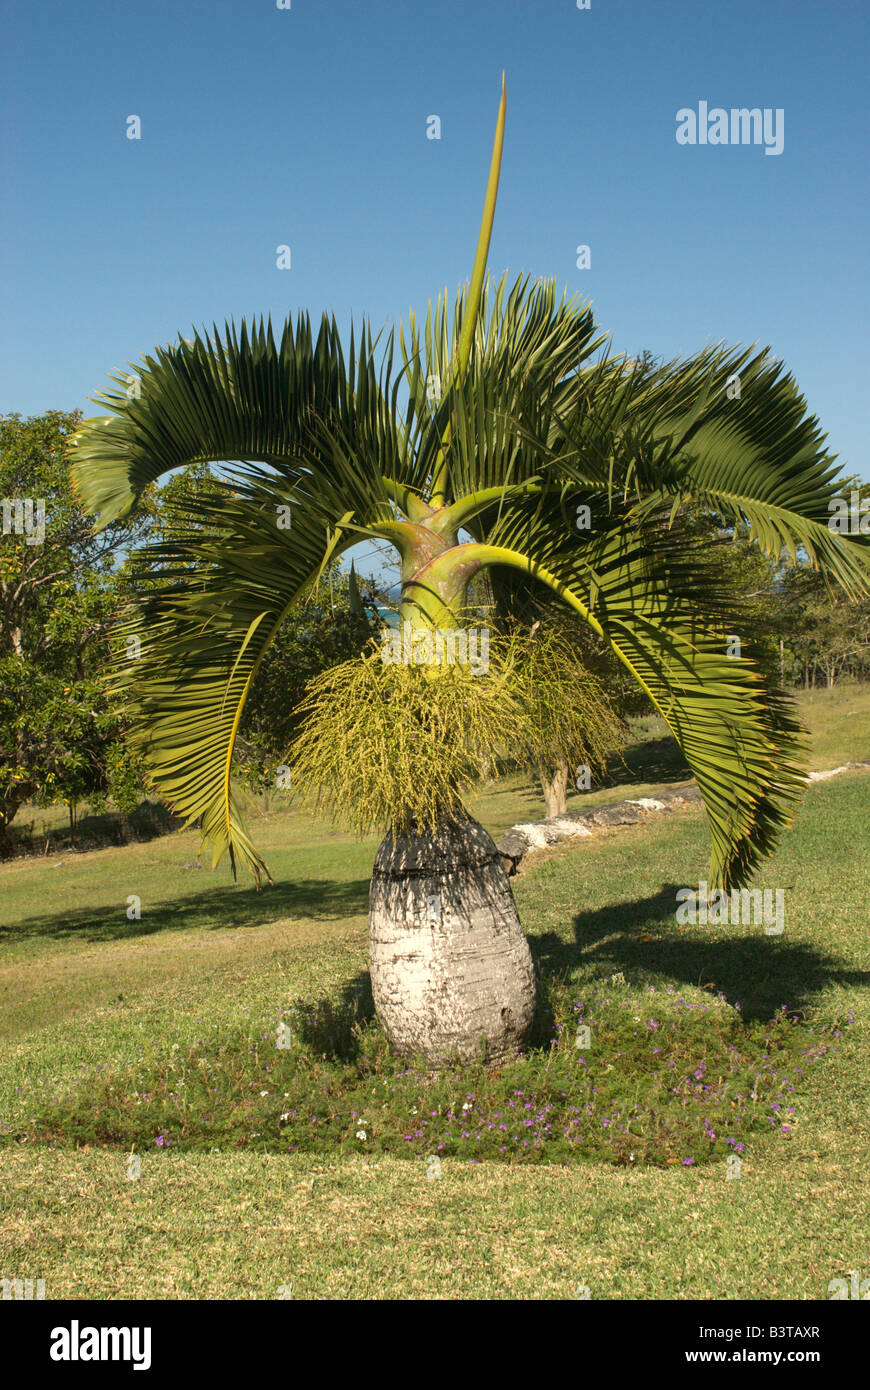 Mauritius. Bottle palm, Hyophorbe lagenicaulis Stock Photo